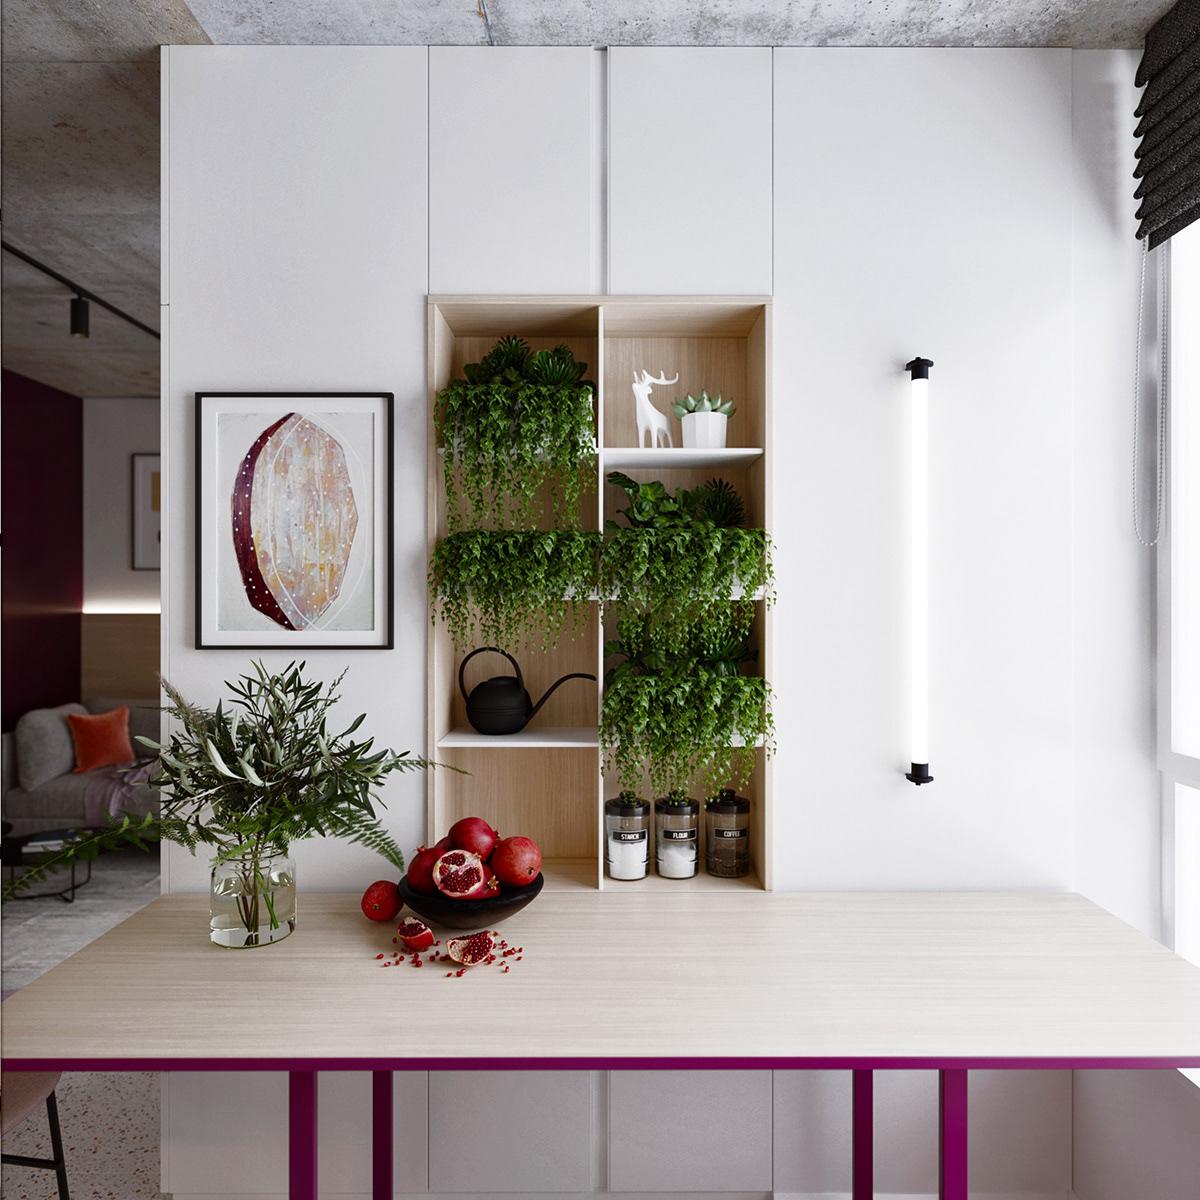 融合不同風格調性，簡單技巧構築舒適和諧的混搭小宅